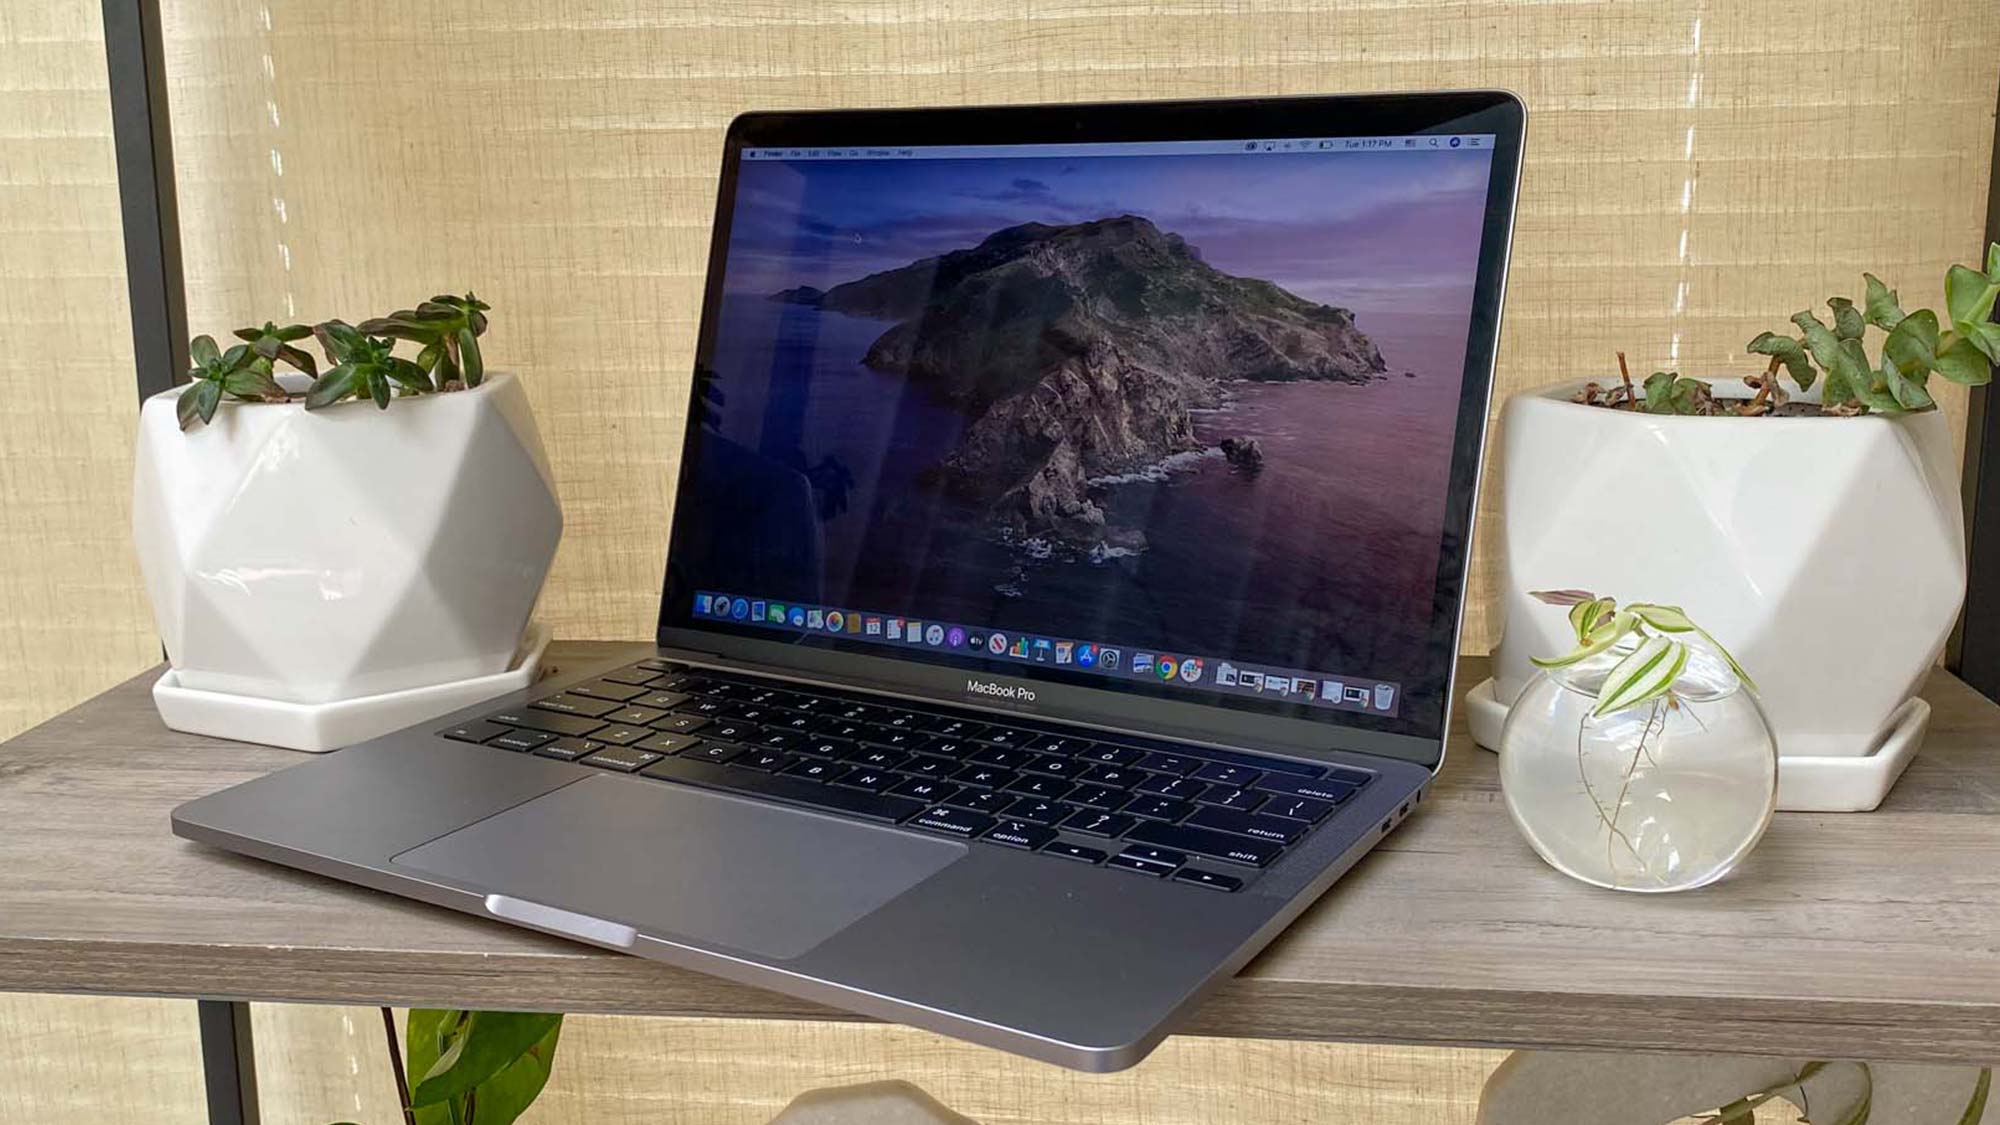 Apple MacBook Pro 13-inch (2020)